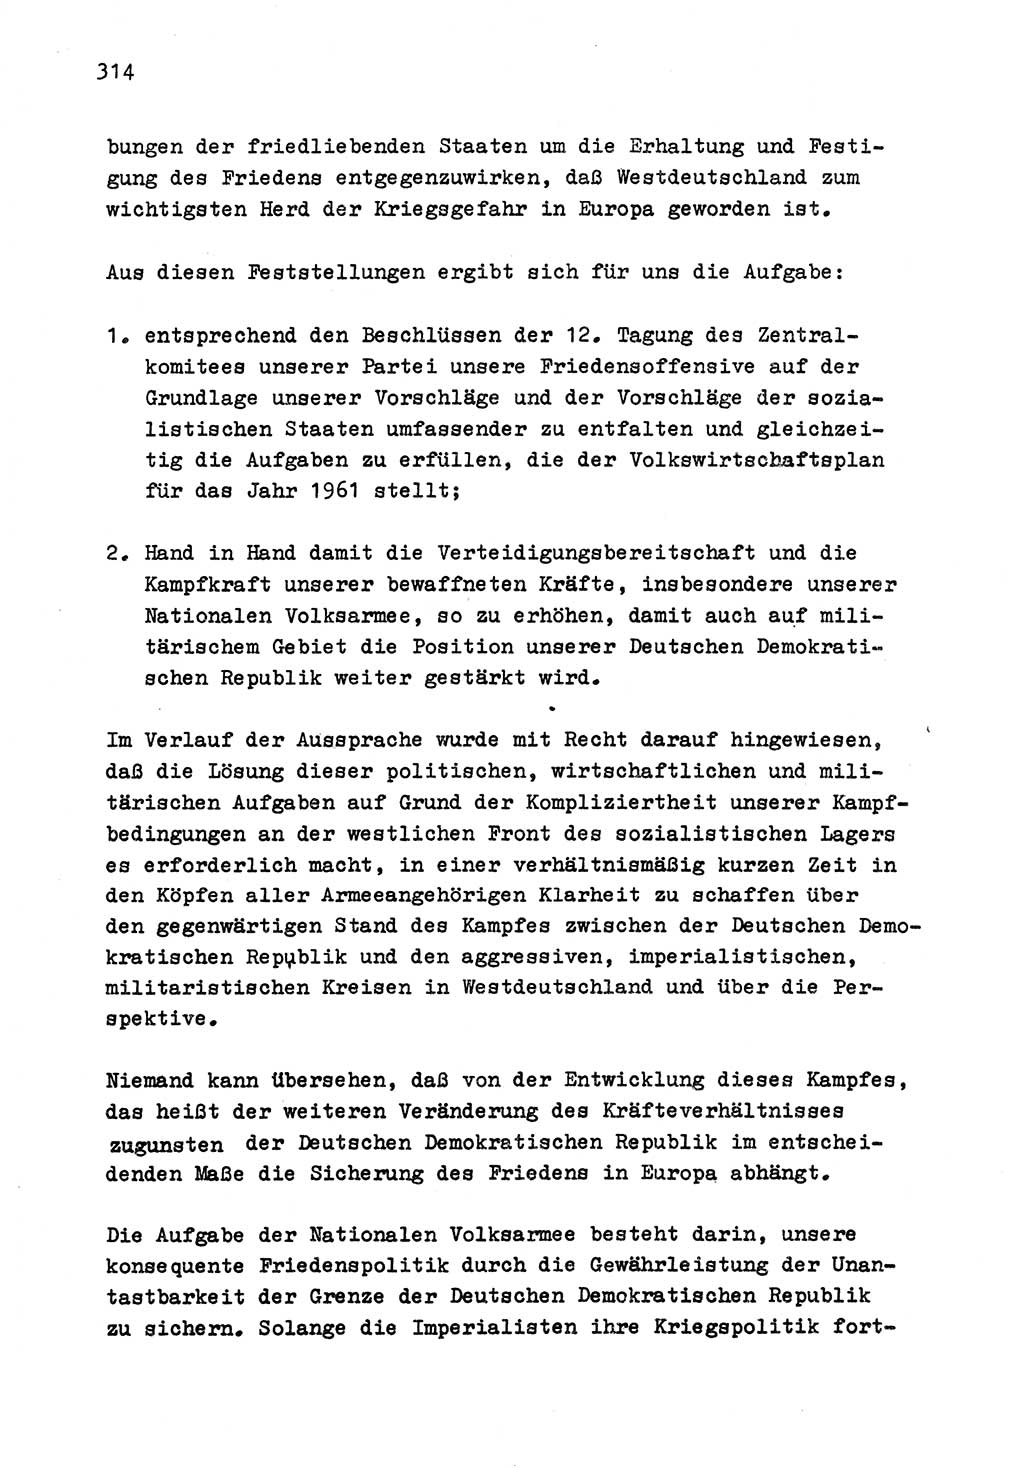 Zu Fragen der Parteiarbeit [Sozialistische Einheitspartei Deutschlands (SED) Deutsche Demokratische Republik (DDR)] 1979, Seite 314 (Fr. PA SED DDR 1979, S. 314)